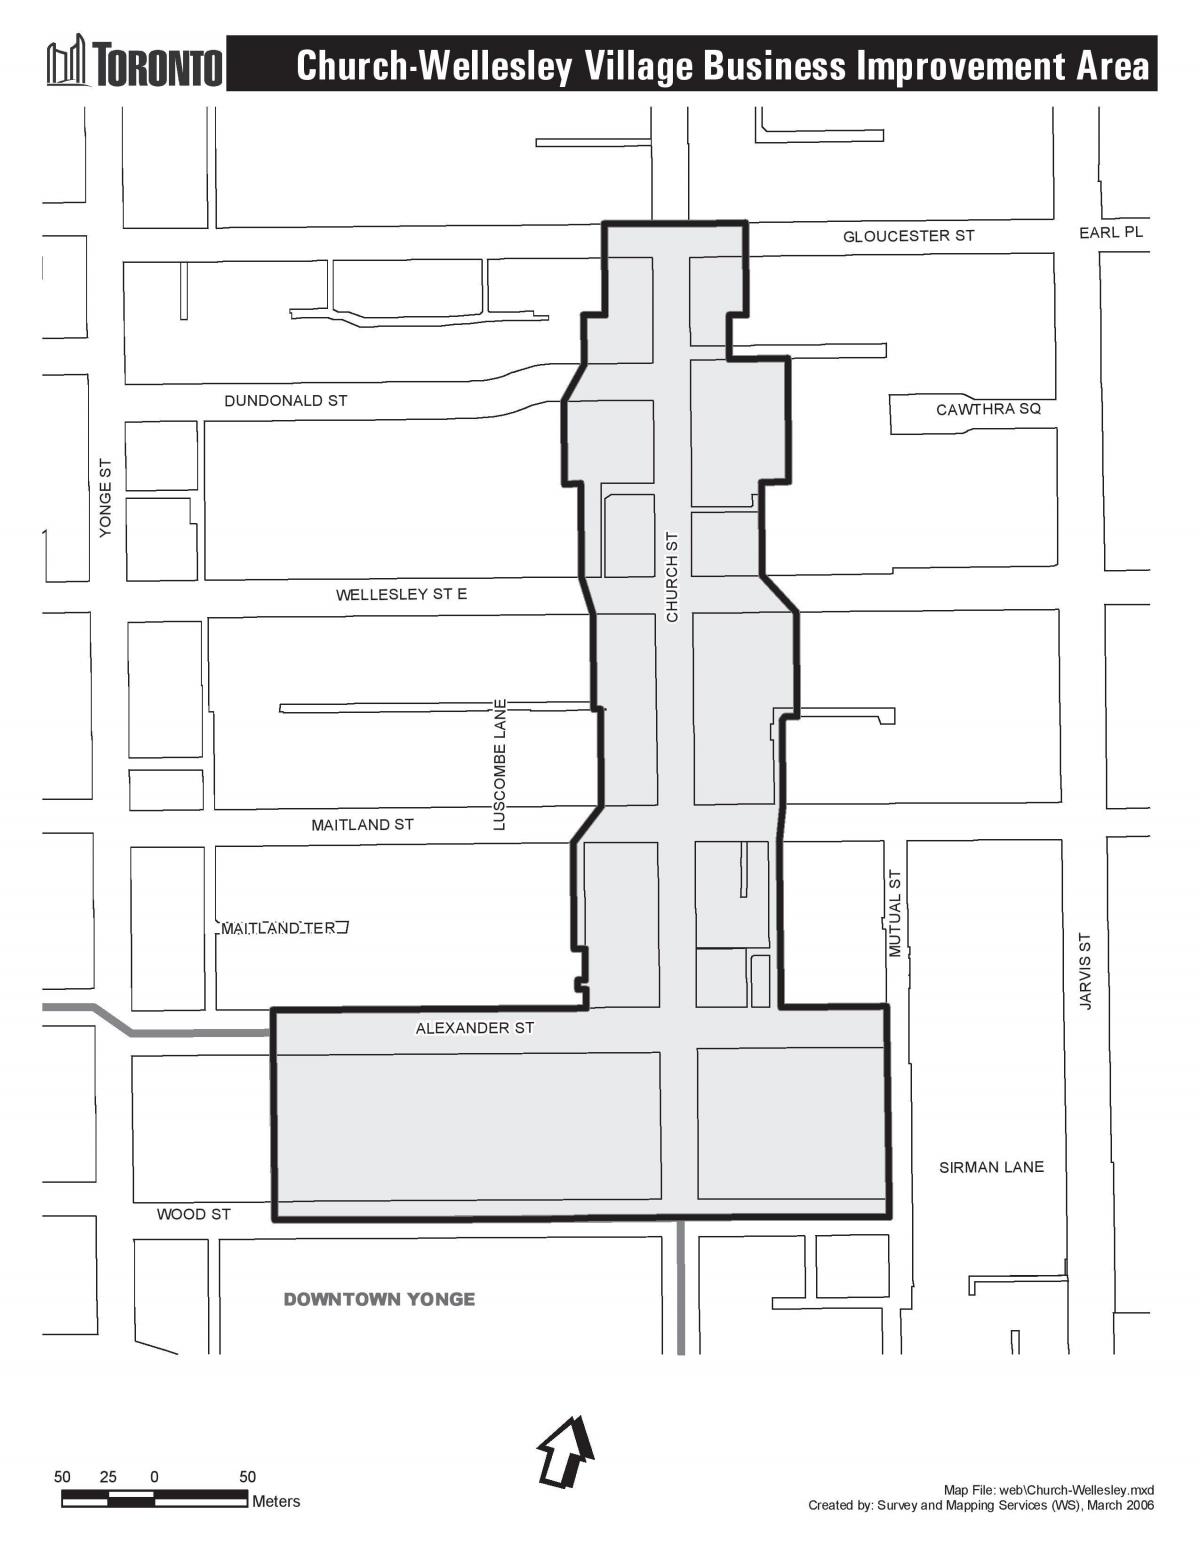 Mapa da Igrexa-Wellesley Aldea de empresas Área de Mellora Toronto